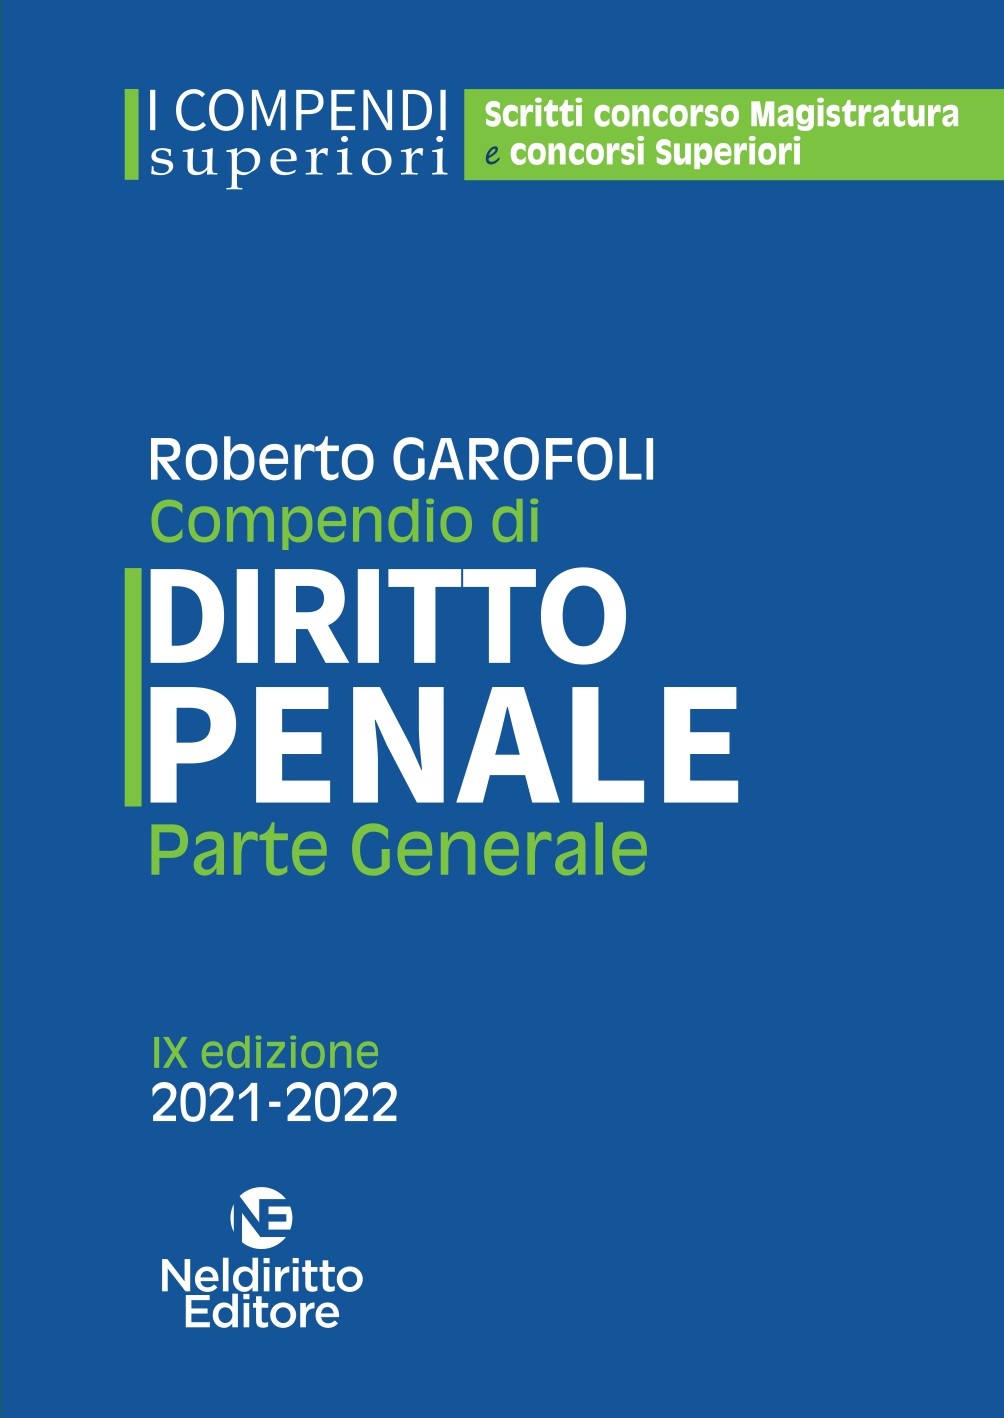 CONCORSO MAGISTRATURA Compendio Superiore Di Diritto Penale - Parte Generale 2021/2022